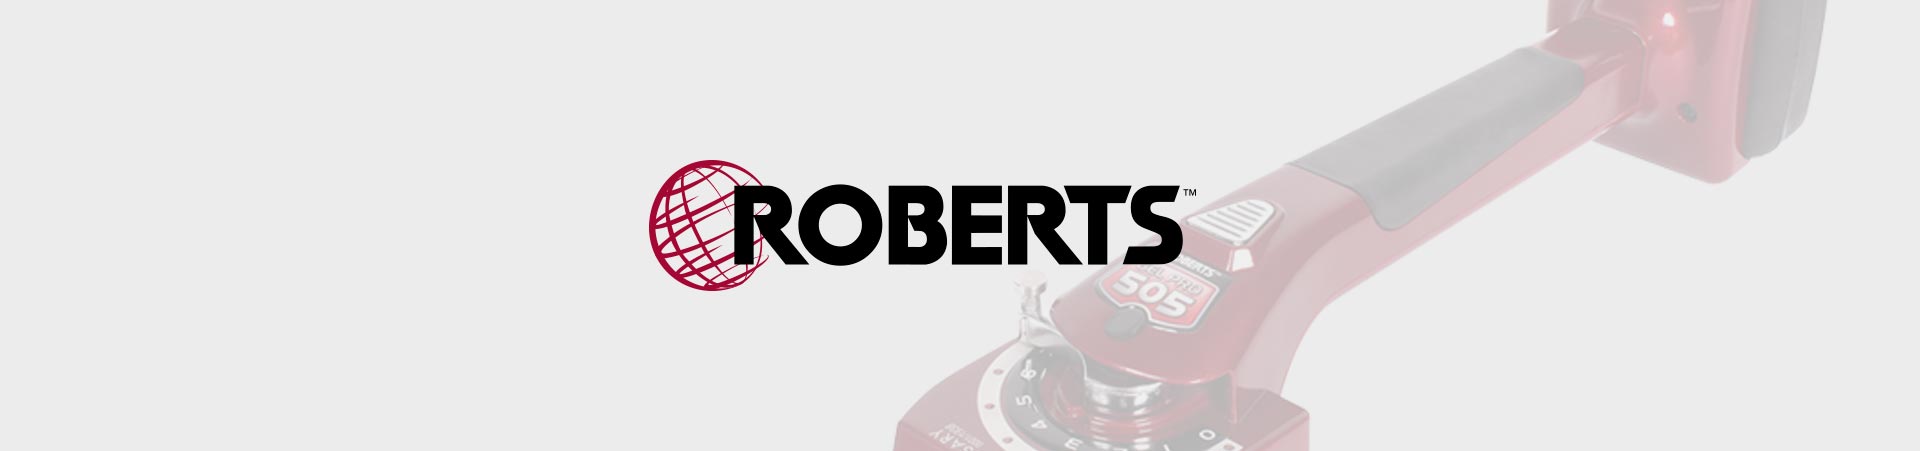 Roberts tools